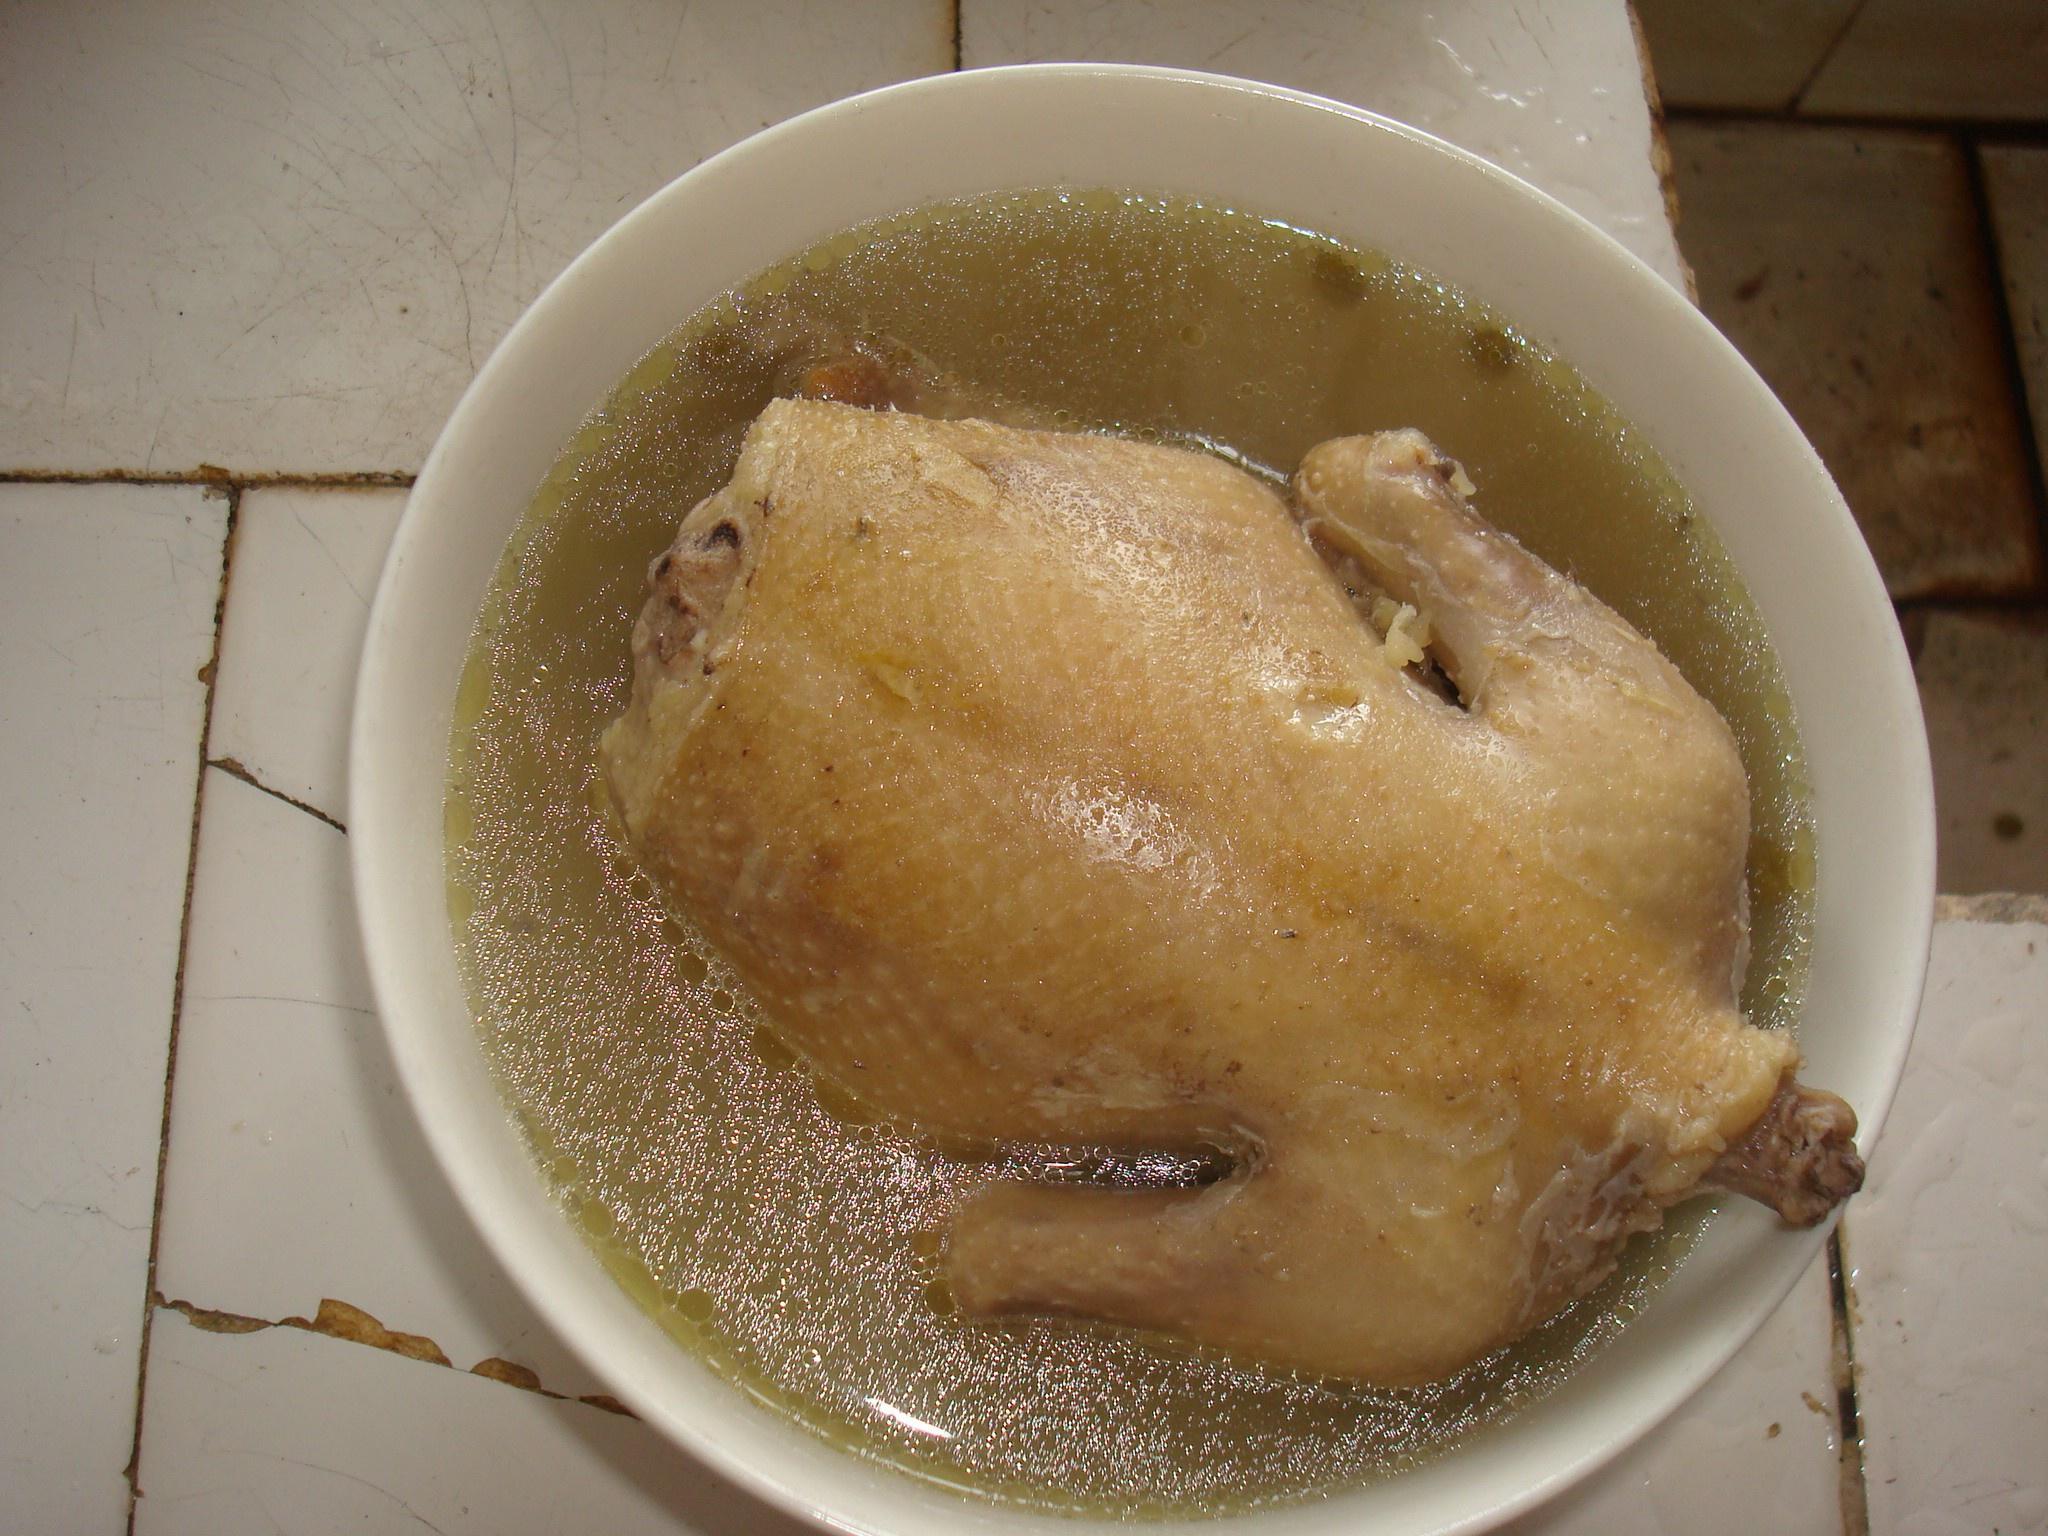 白鸽绿豆汤的做法